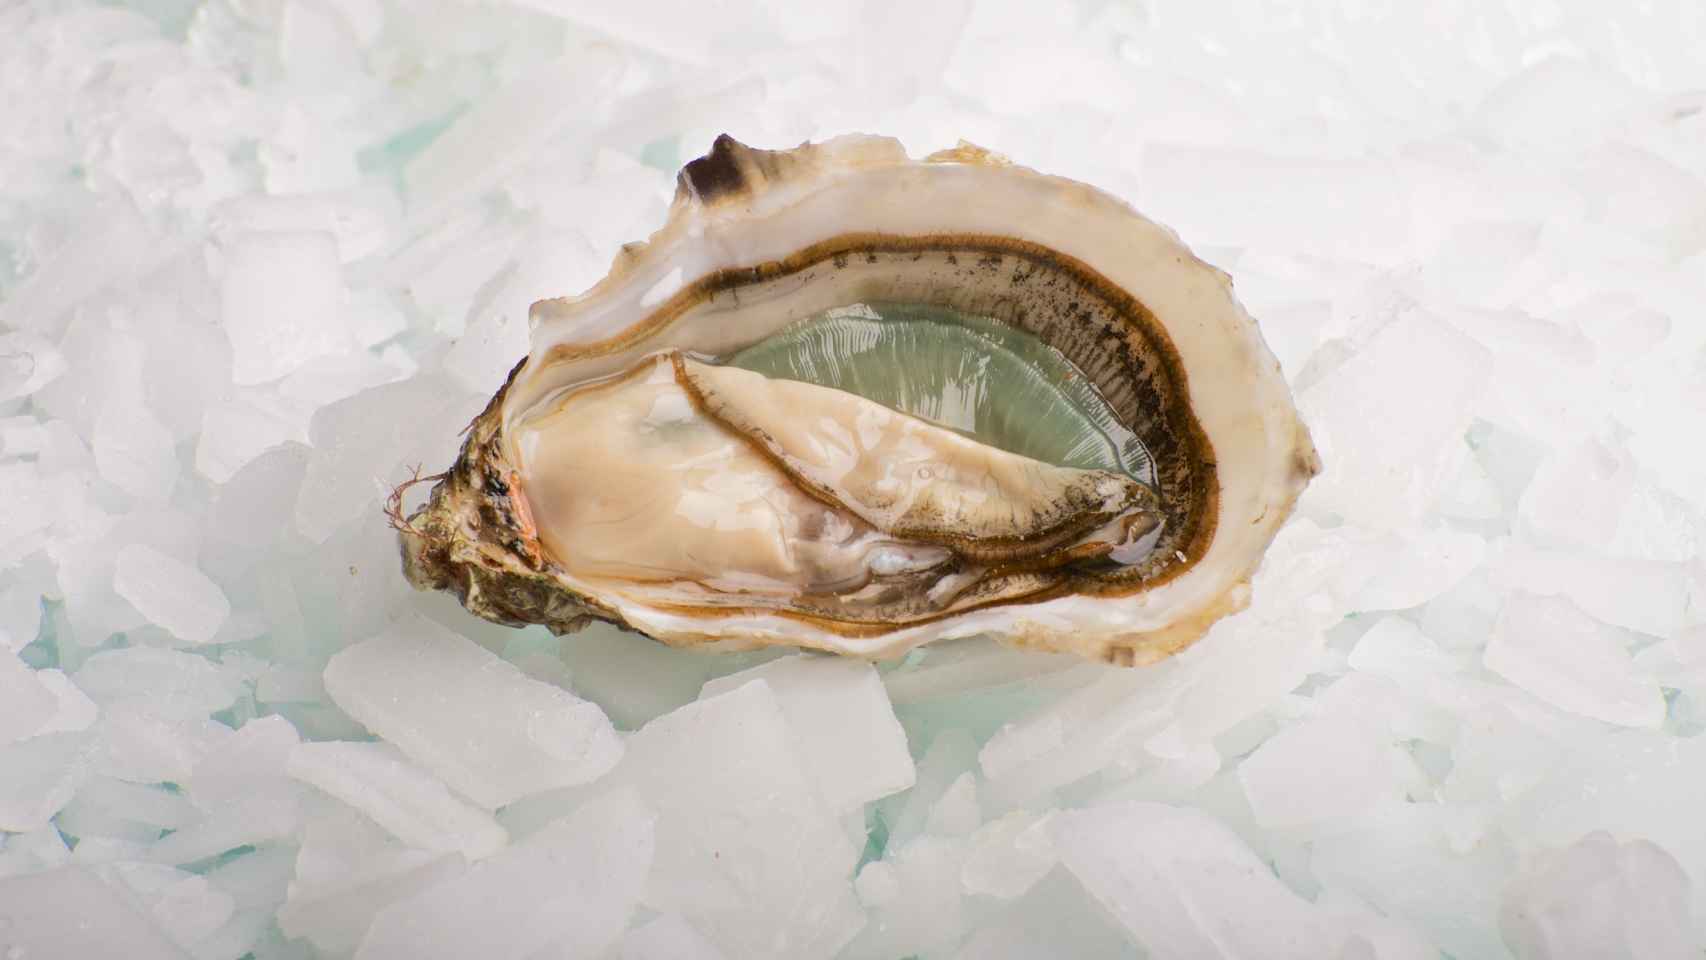 El restaurante Gouthier tiene su propio criadero de ostras en el sur de Francia